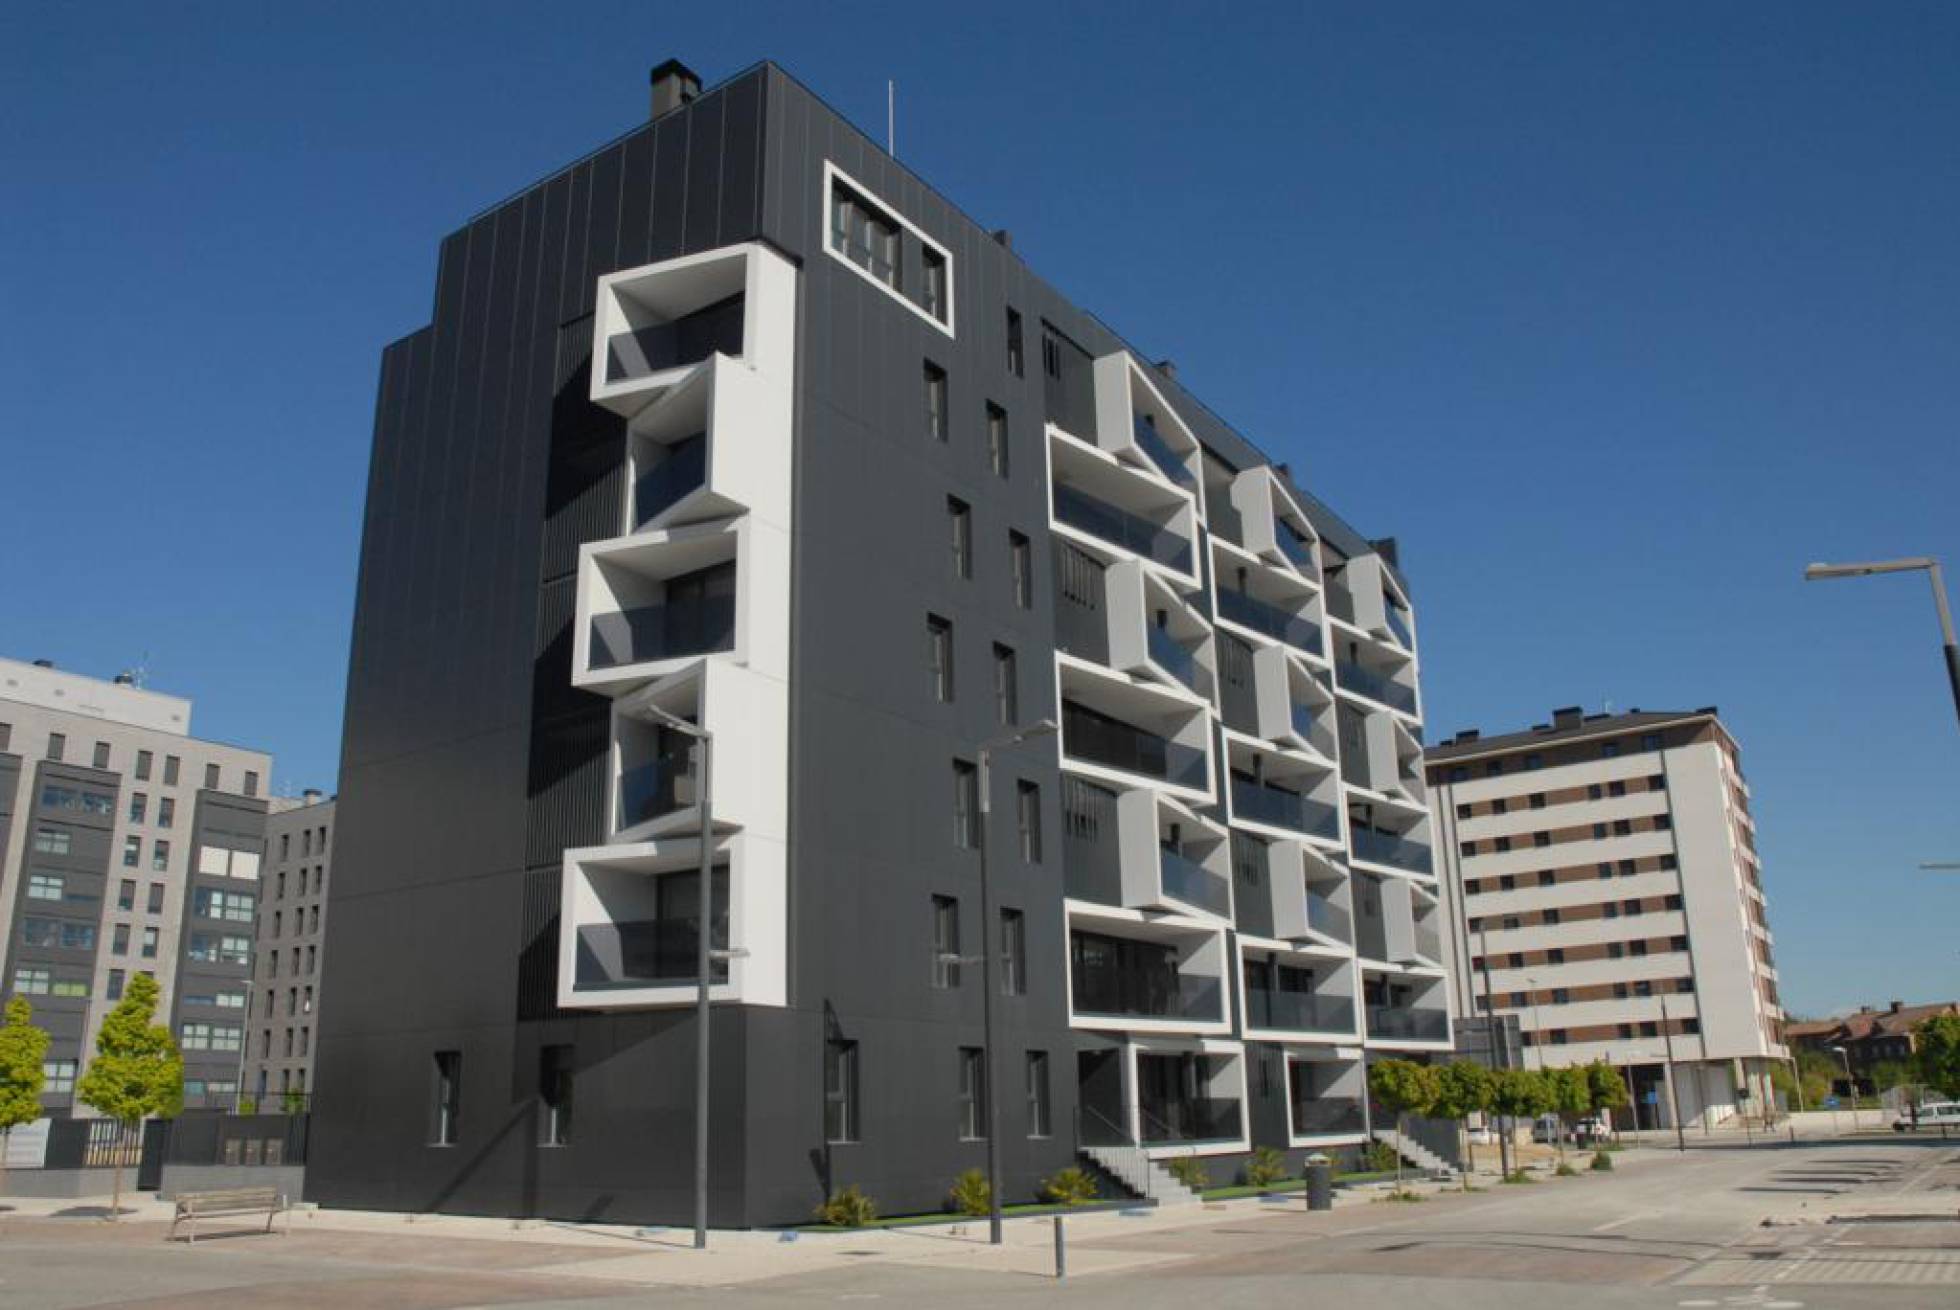 Edificio con certificado passivhaus, situado en Pamplona